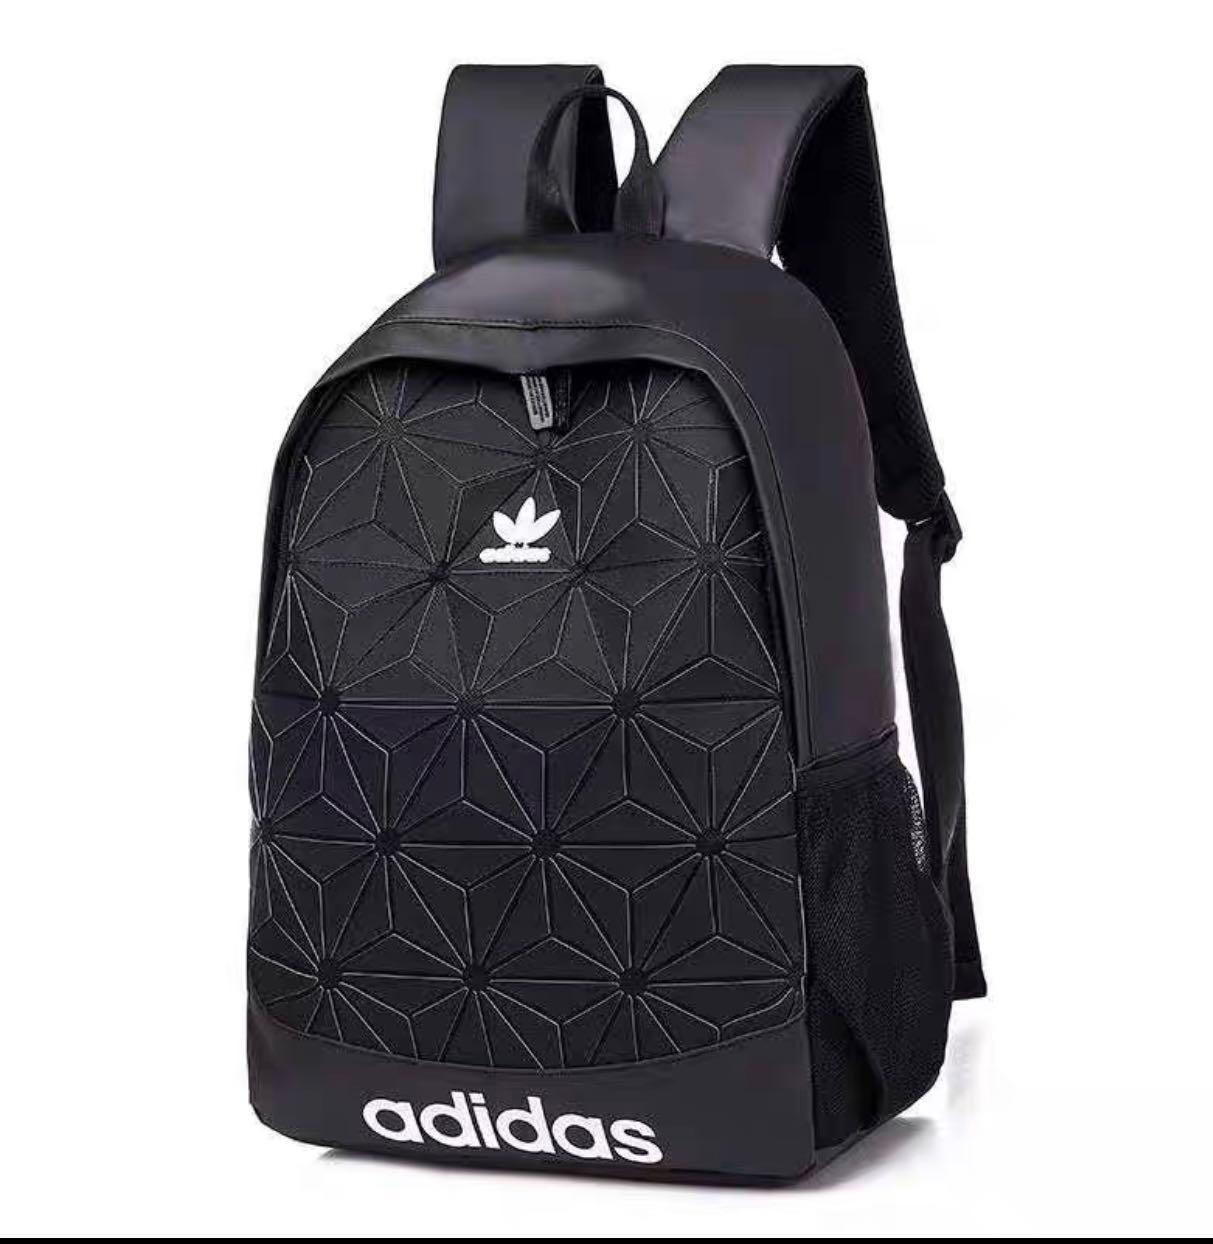 Adidas Issey Miyake 2018 Backpack 